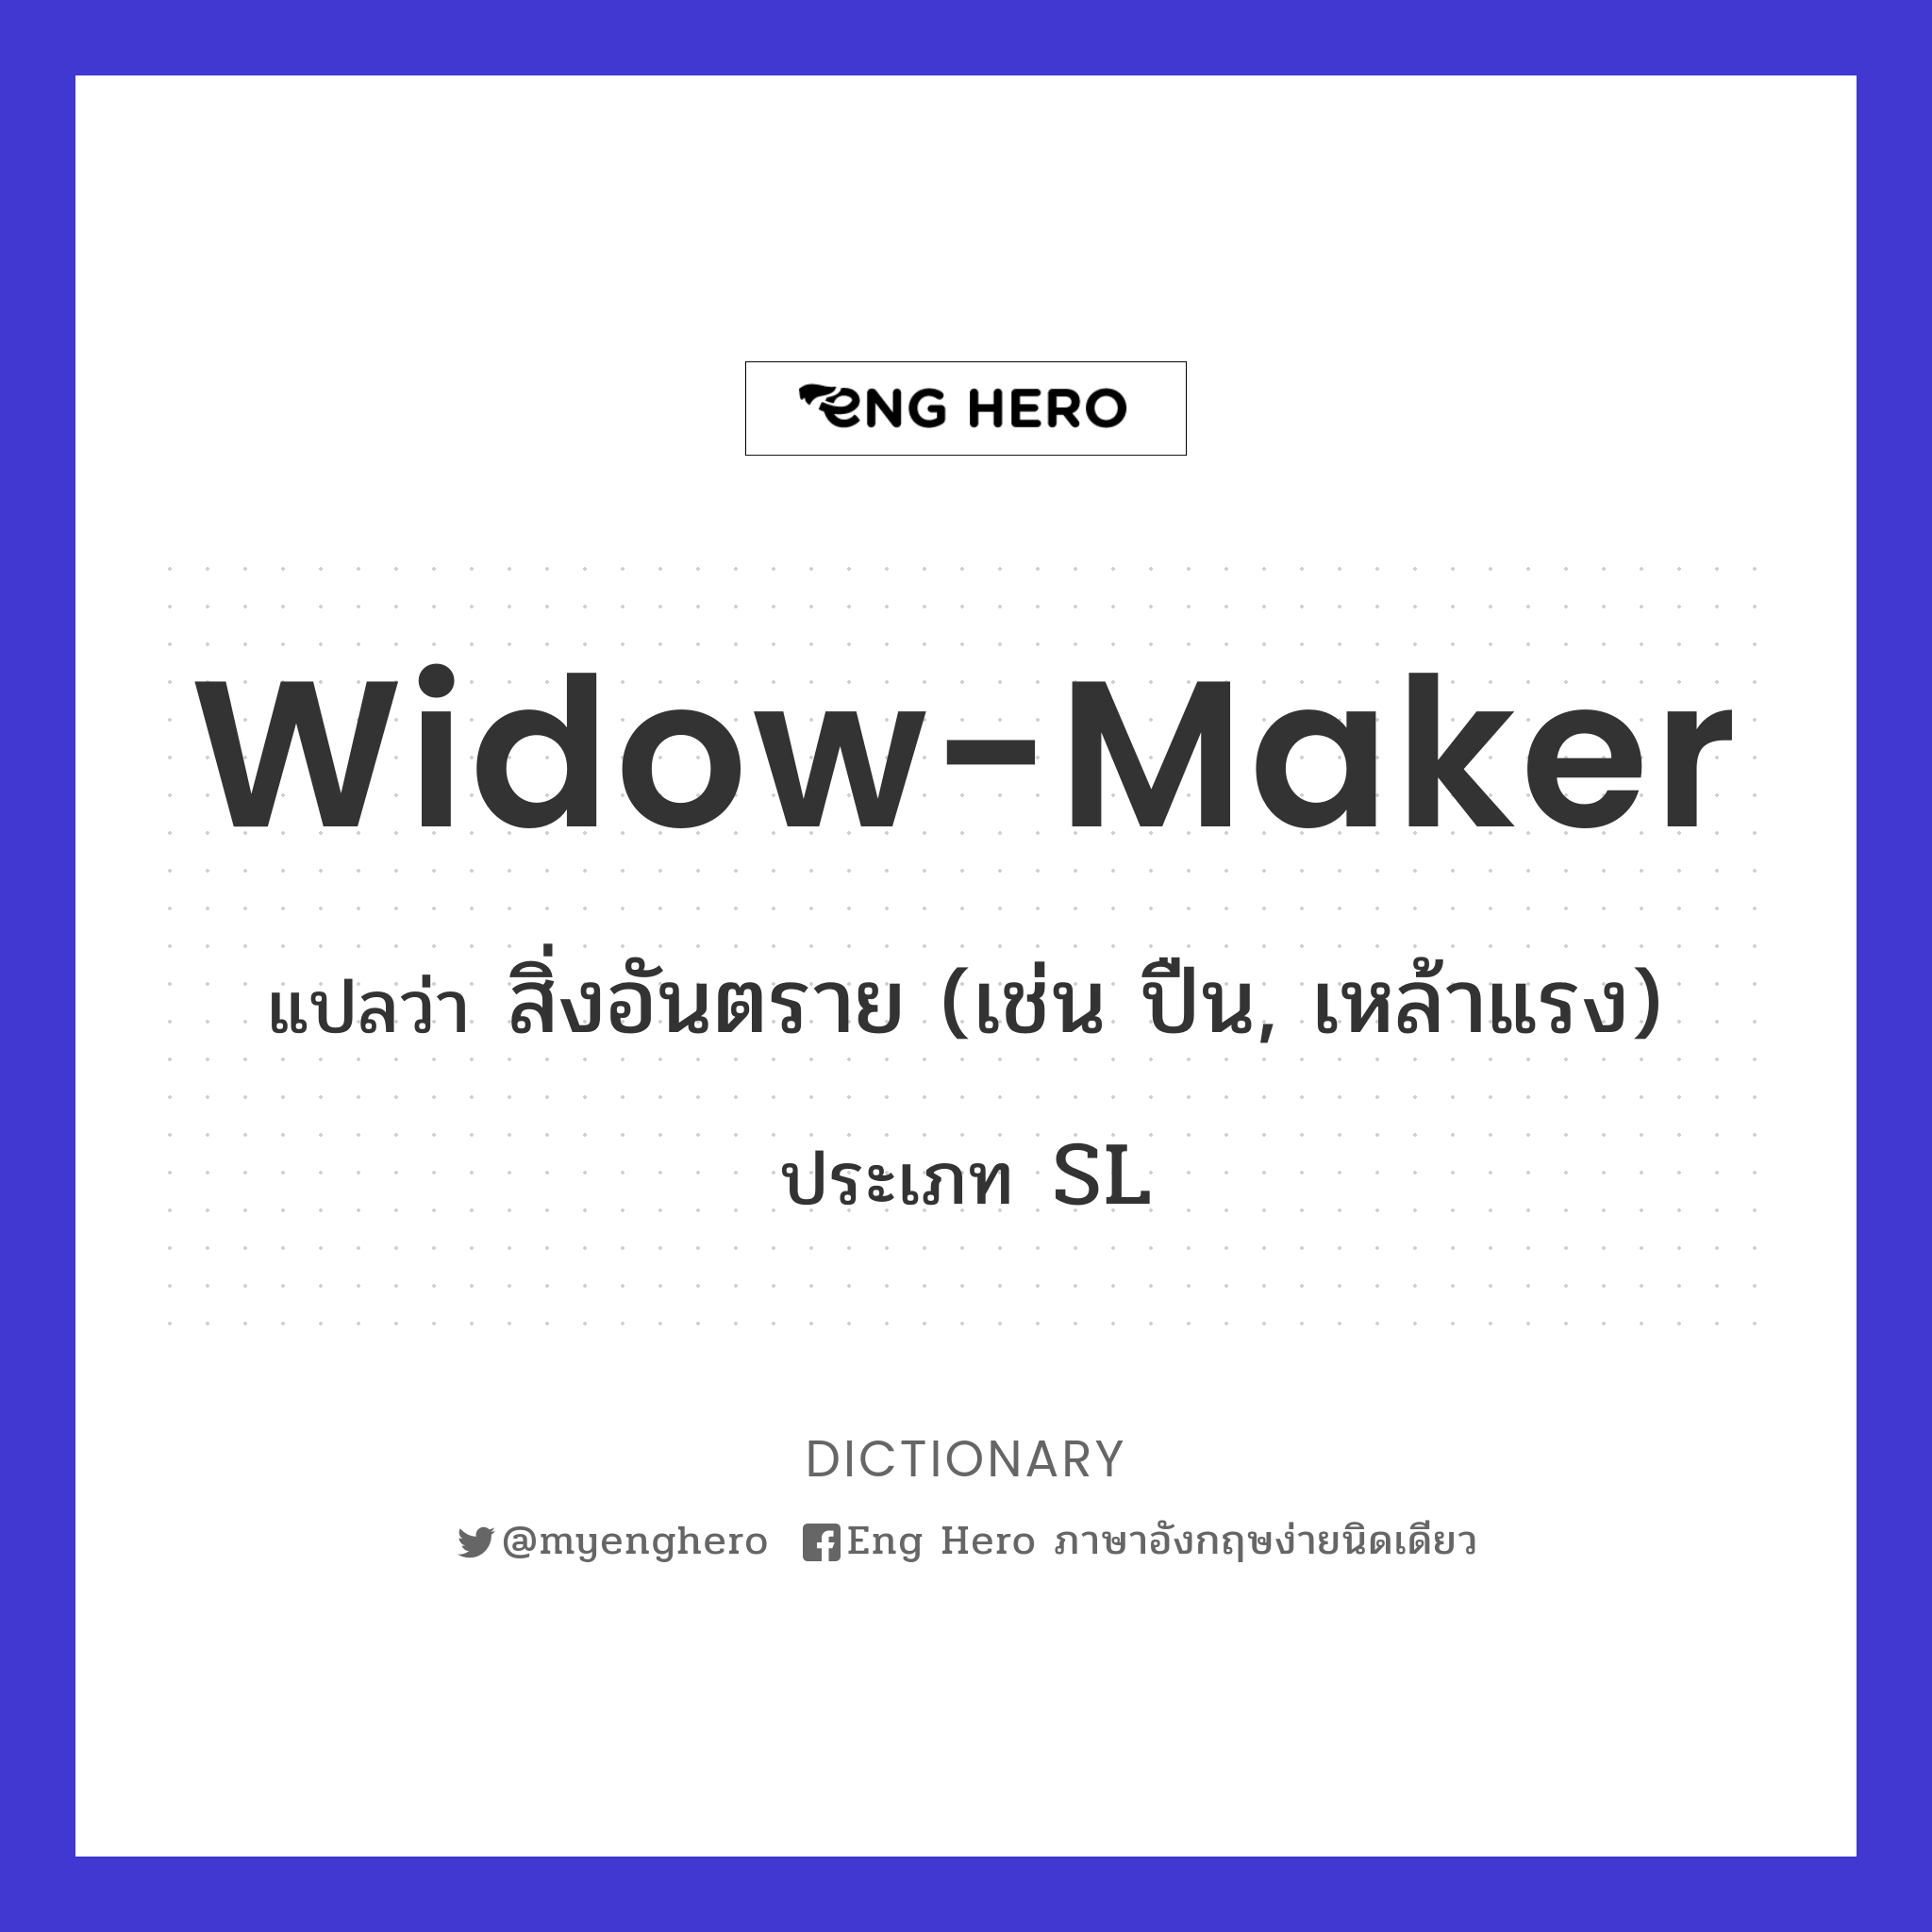 widow-maker